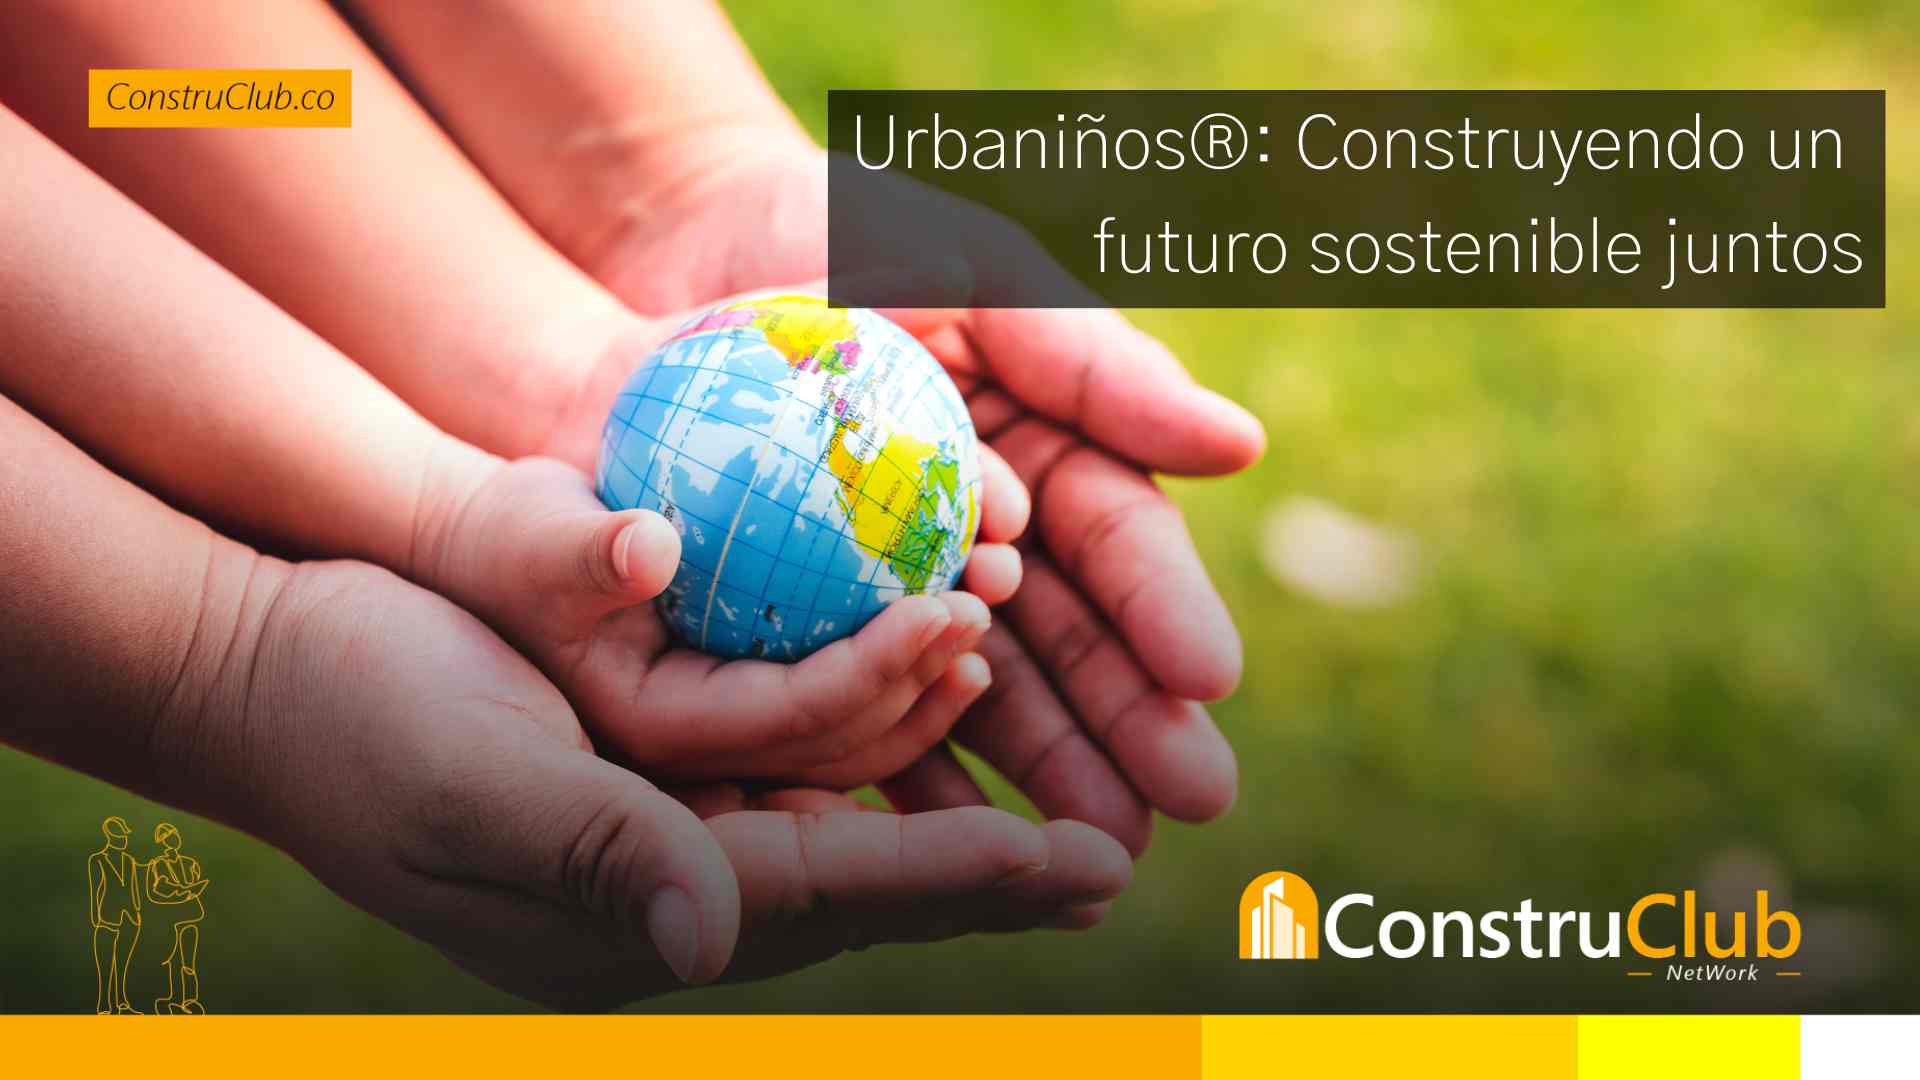 Urbaniños®: Construyendo un futuro sostenible juntos